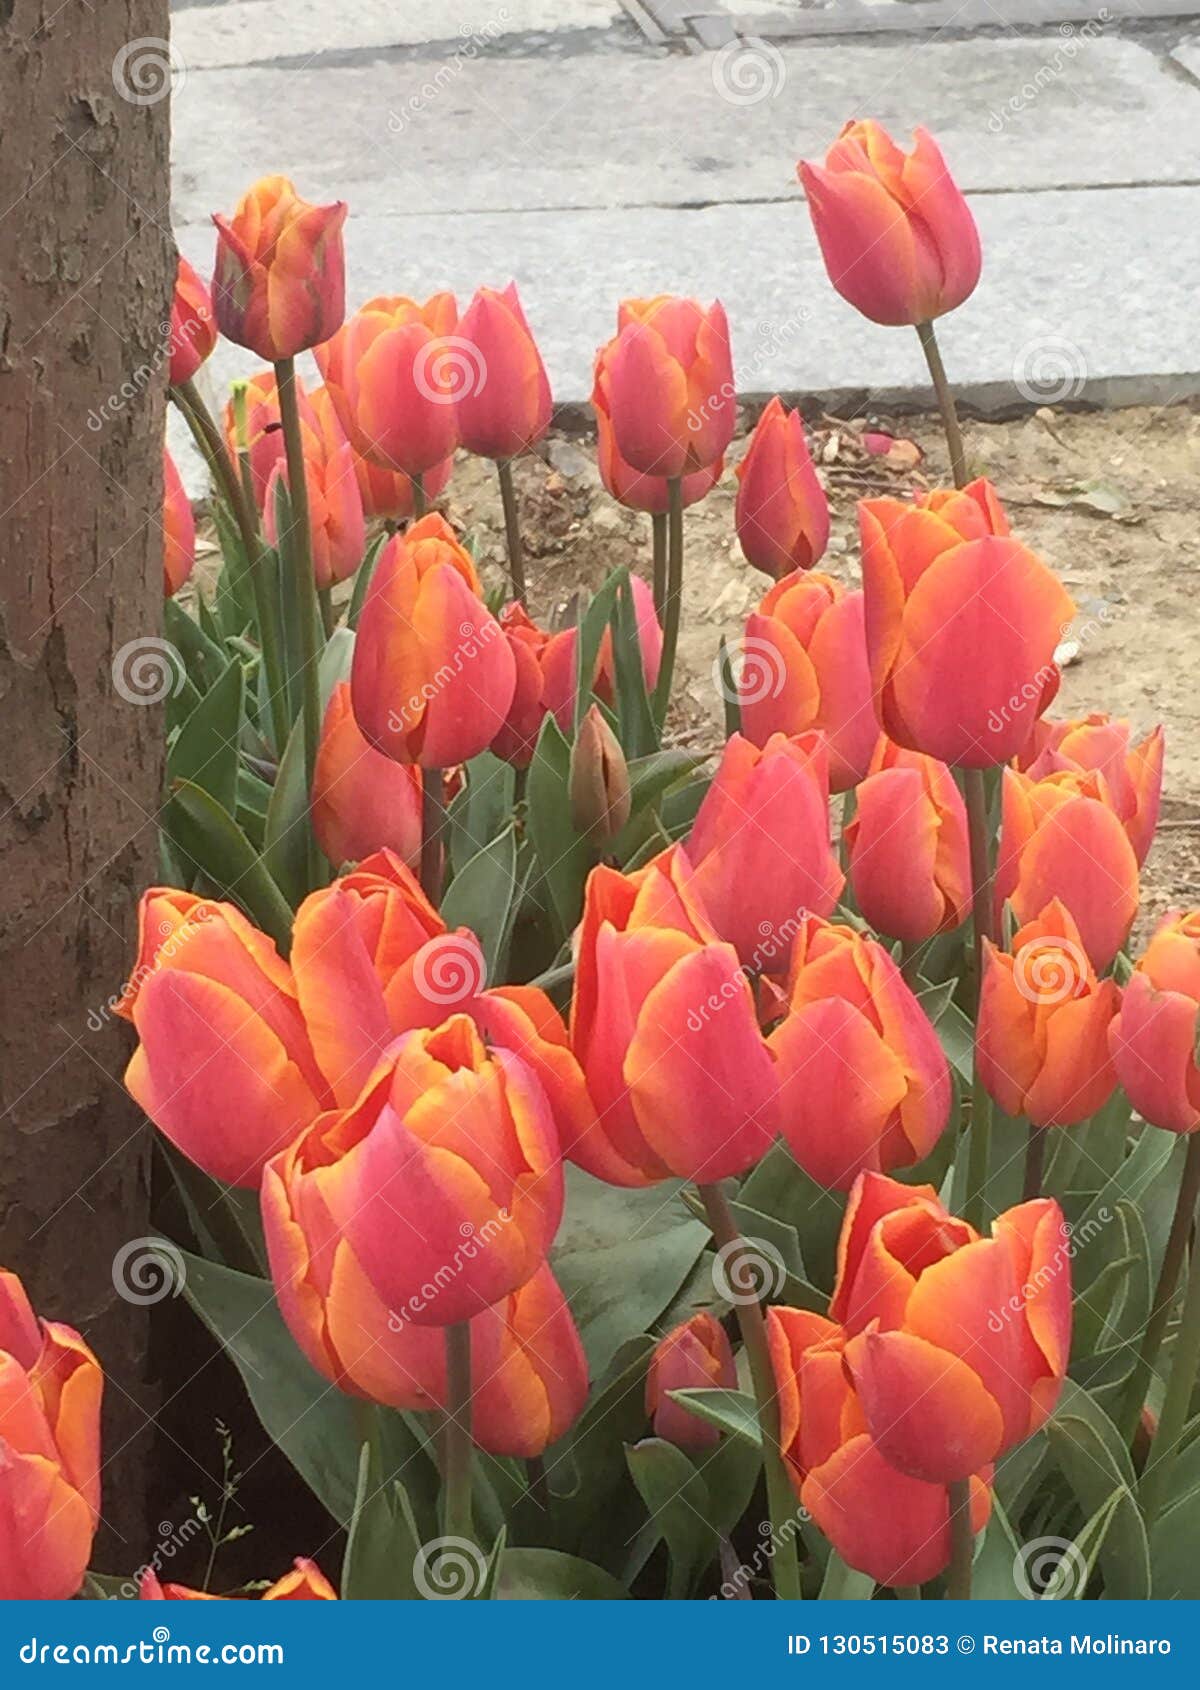 turkish tulips